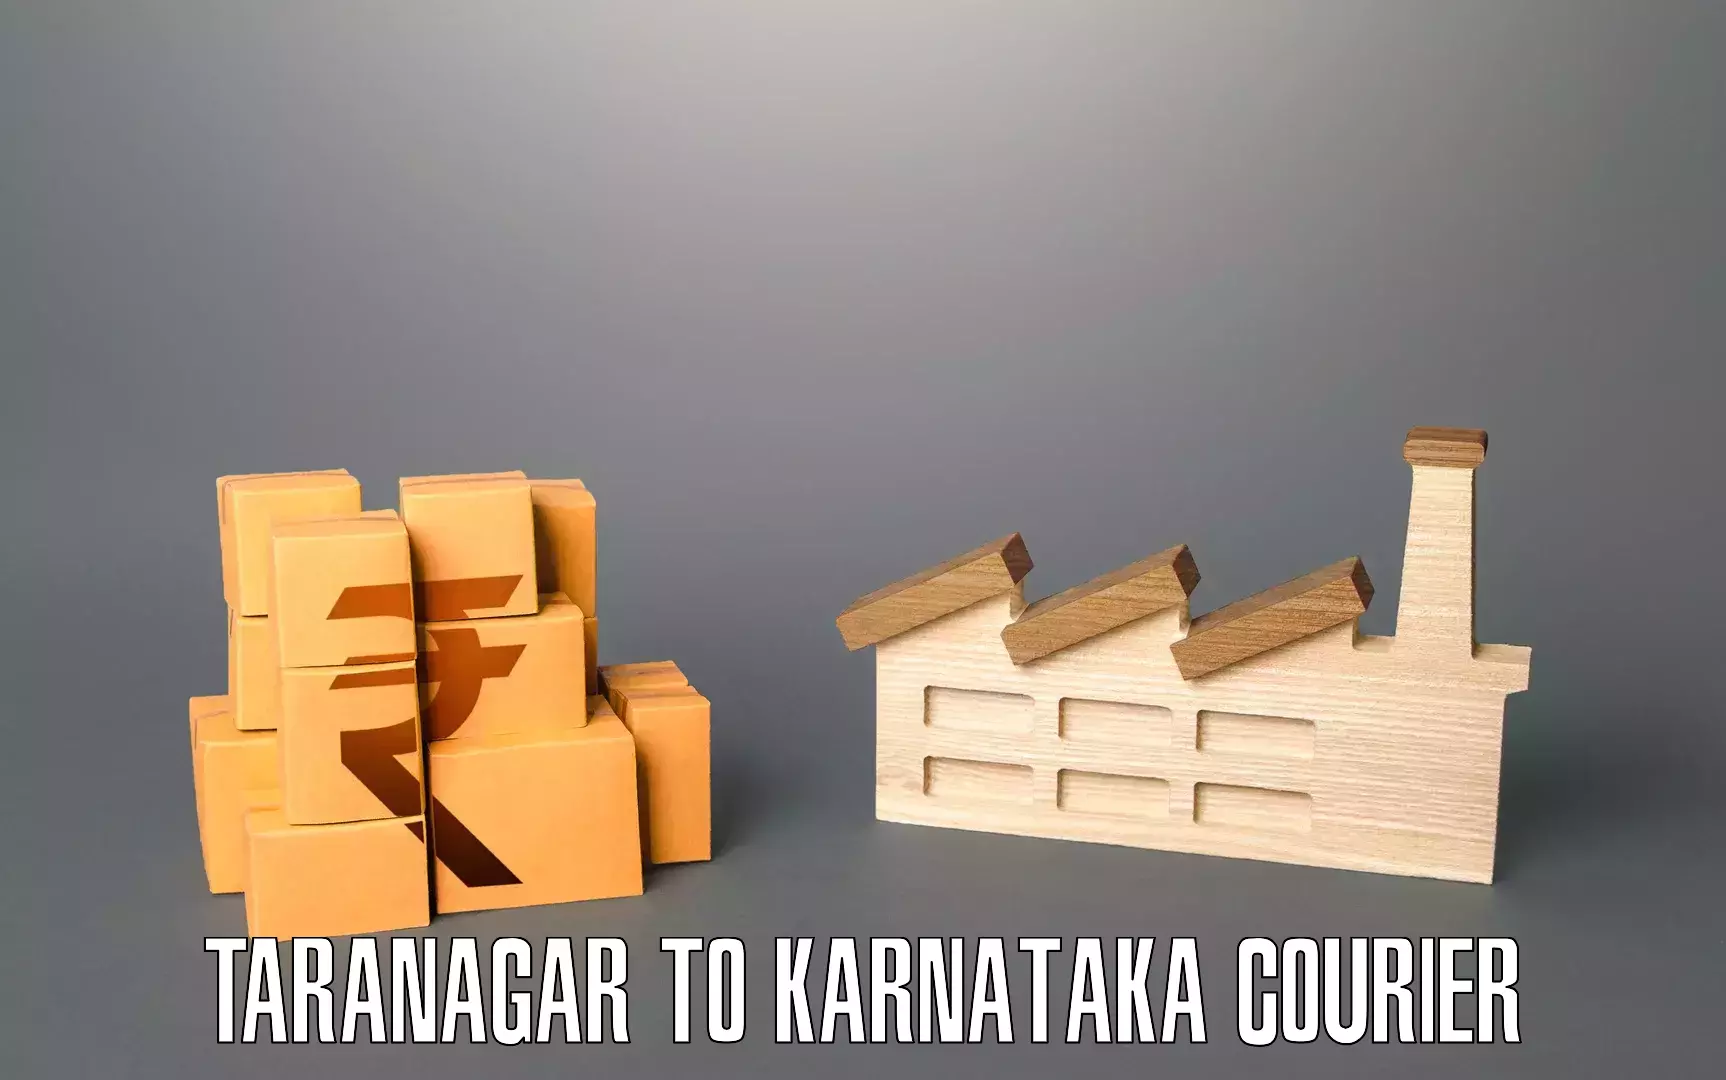 Moving and handling services in Taranagar to Karnataka